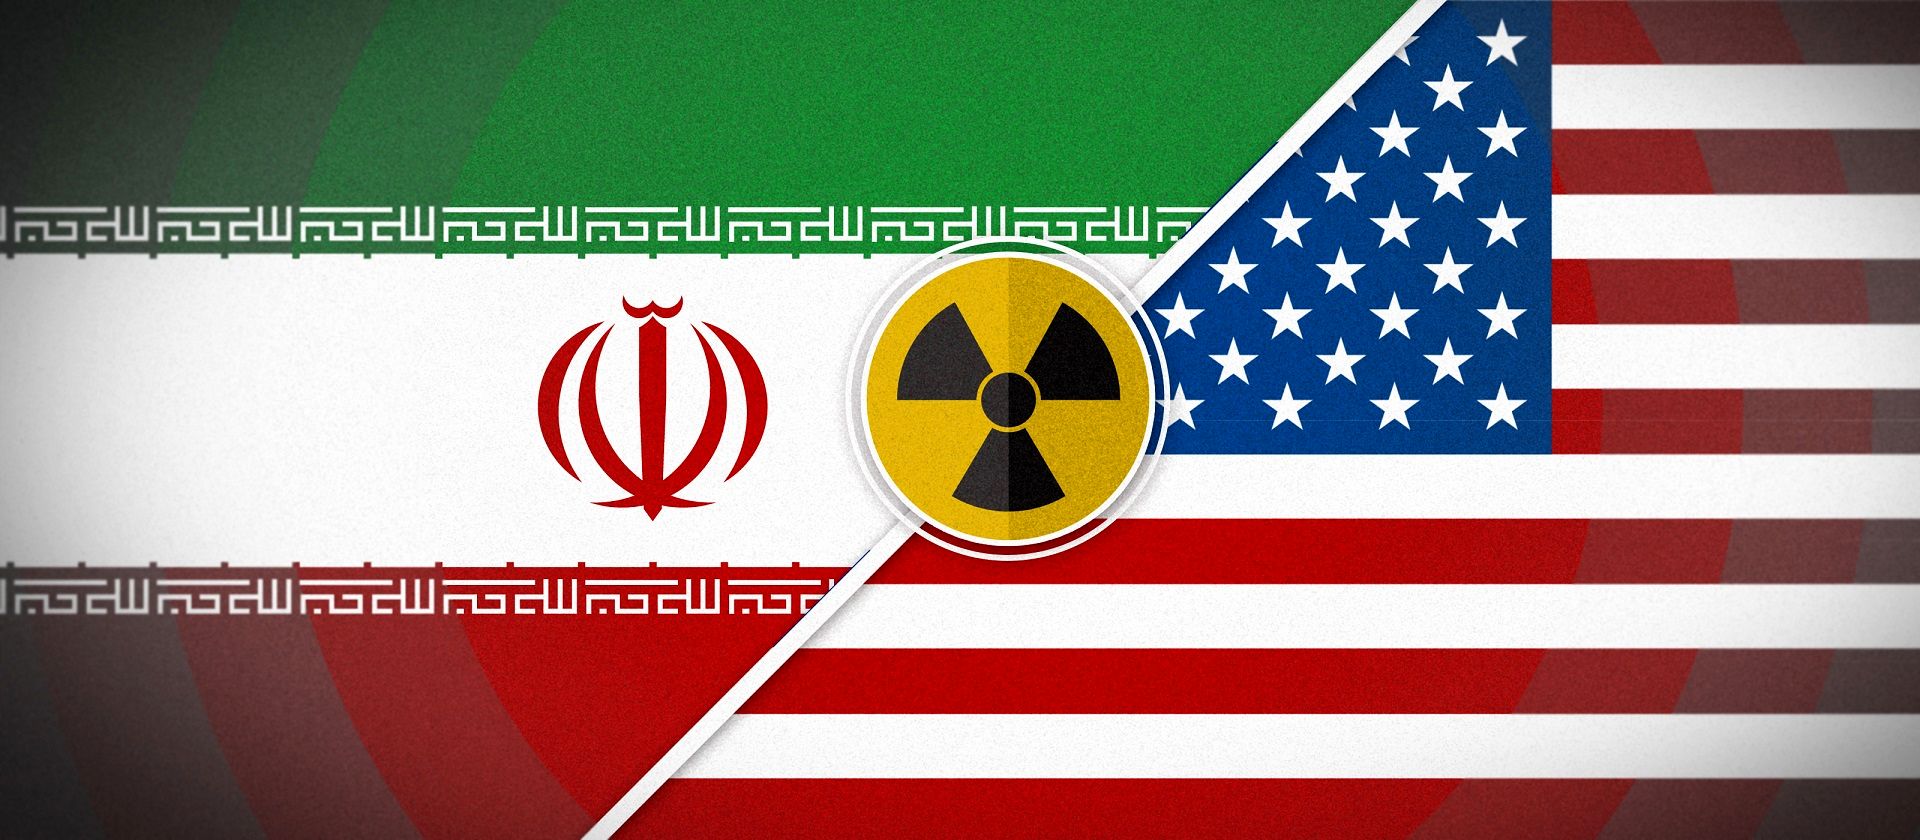 سیگنال آمریکا برای توافق با ایران یا گام فنی کوچک؟